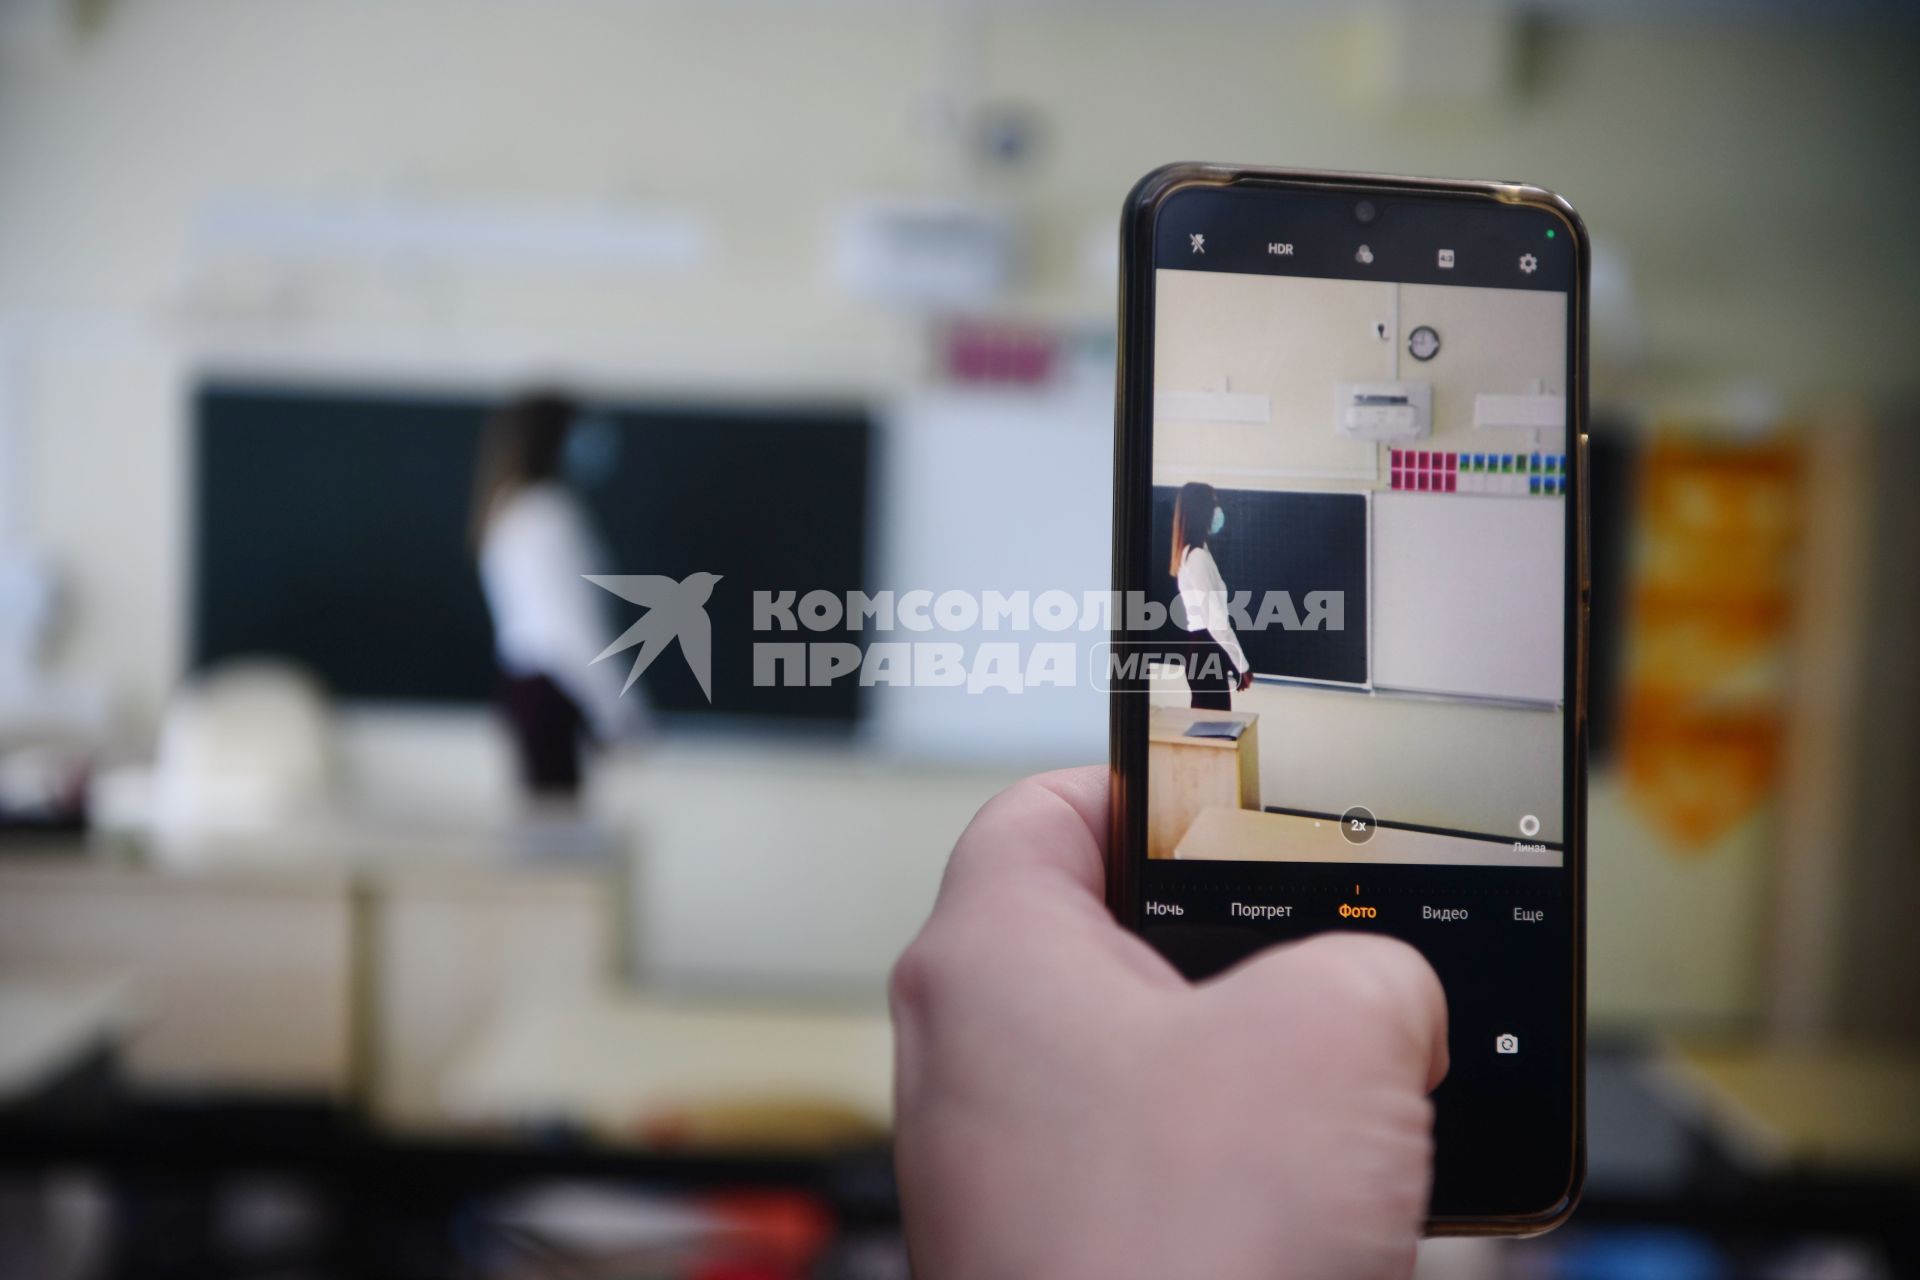 Екатеринбург. Ученик снимает учителя  на телефон в классе во время урока